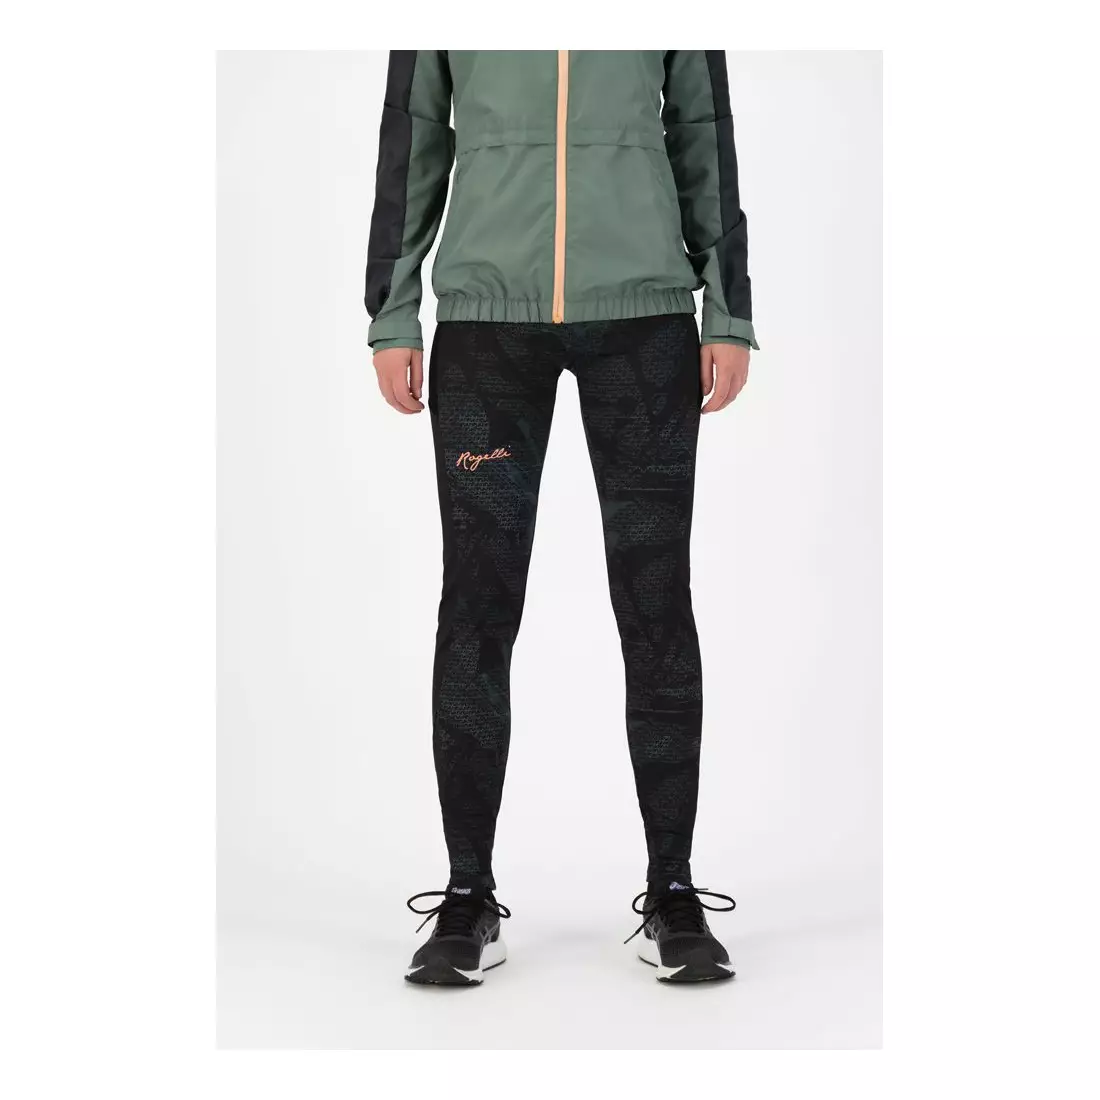 ROGELLI dámské běžecké kalhoty SNAKE black/green ROG351107